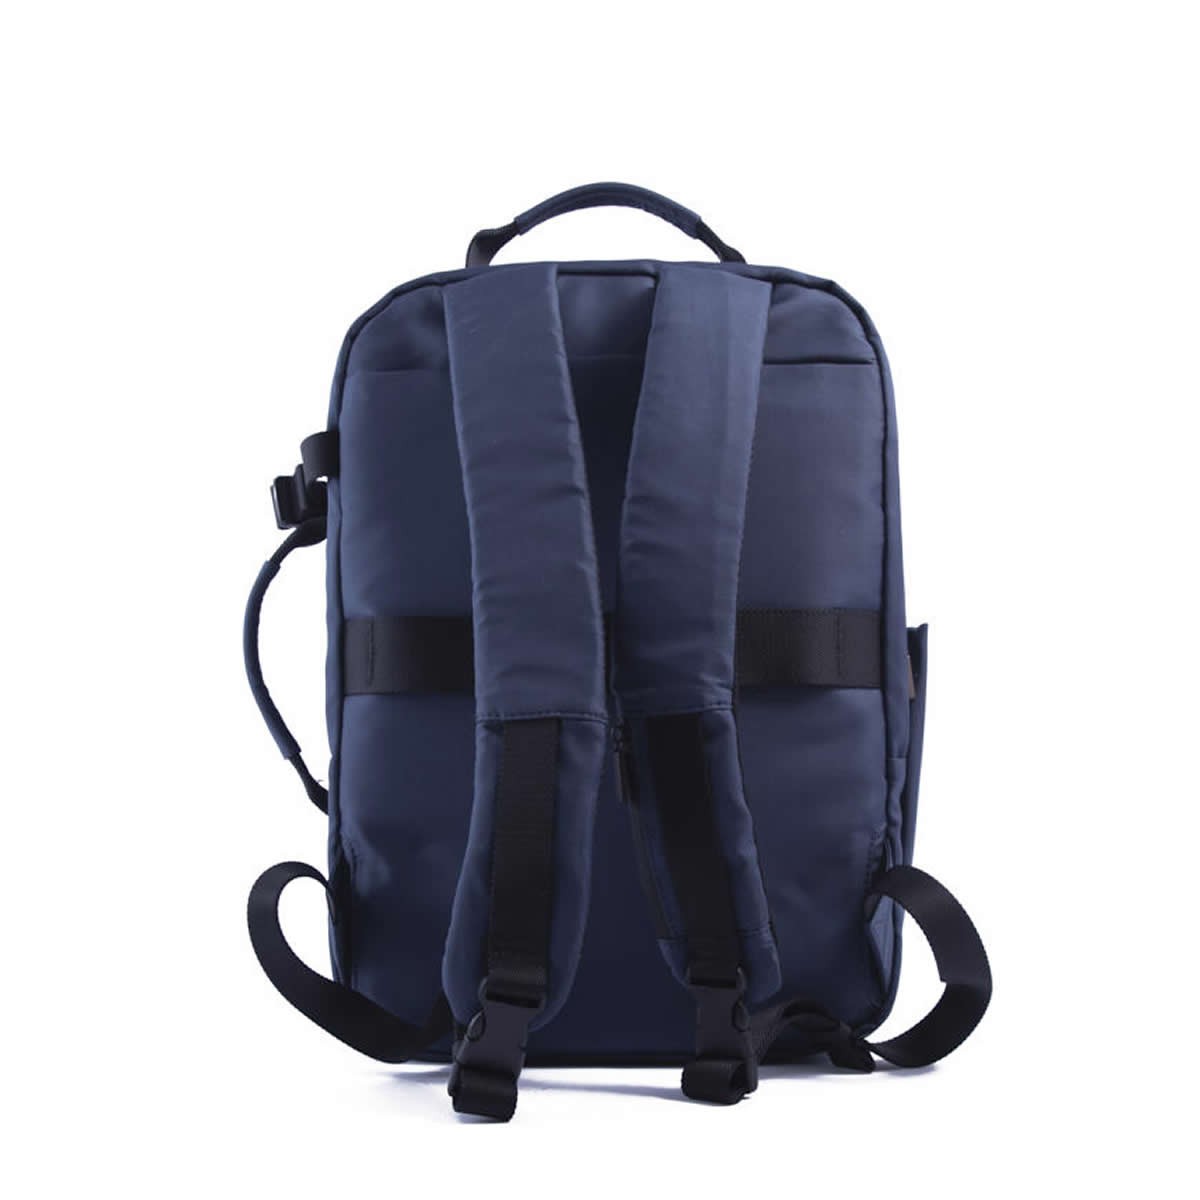 NAVA Design Backpack EXPLORER Night Blue- Τσάντα πλάτης 15.6''